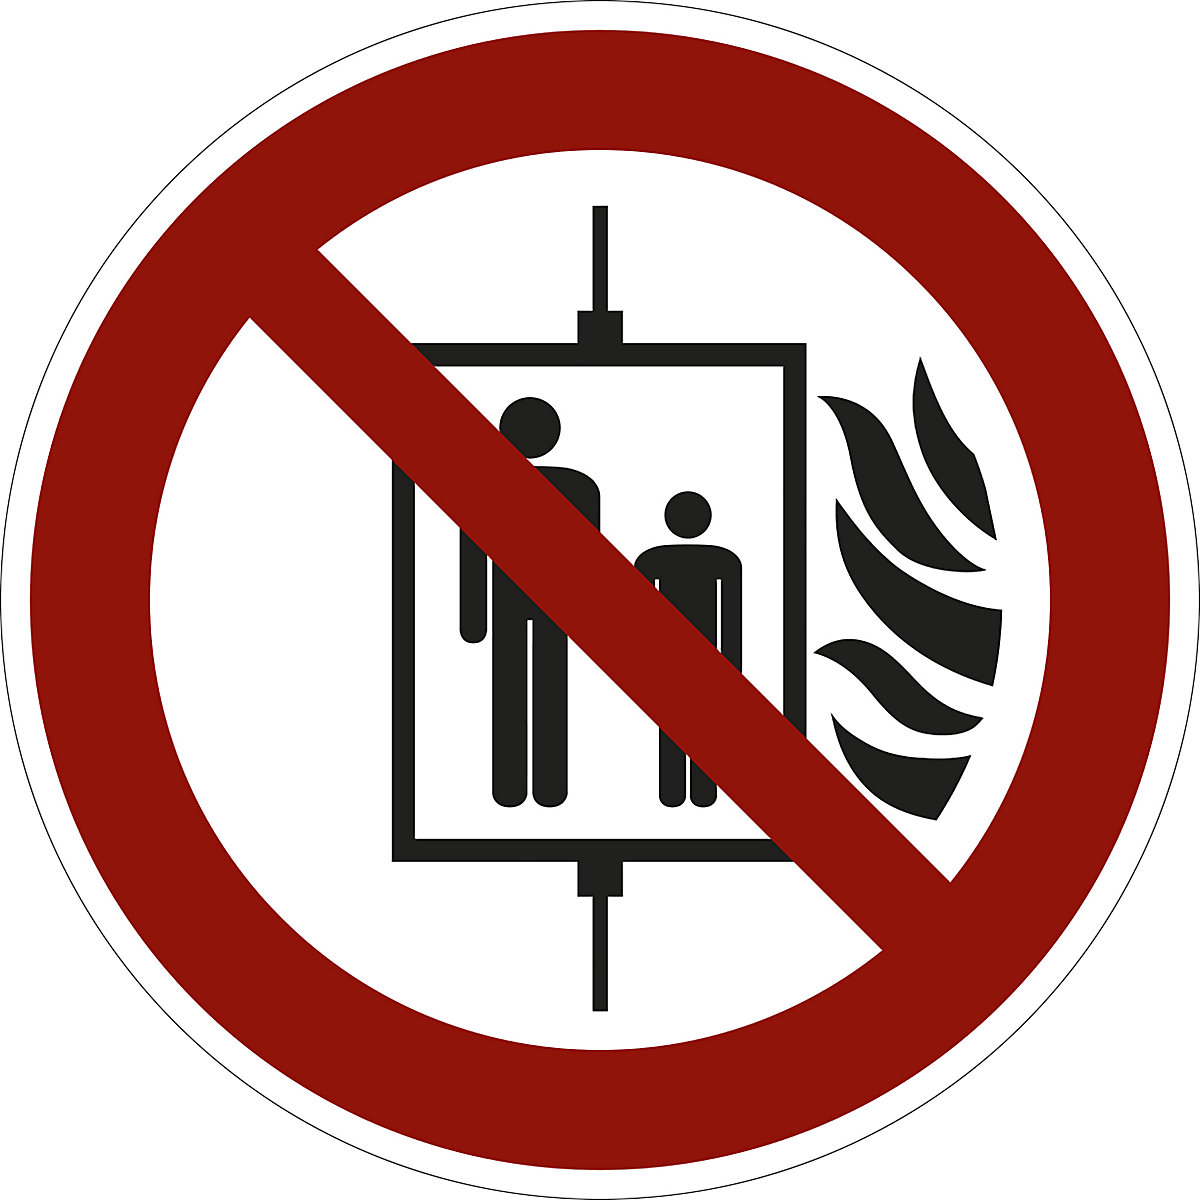 Zákazová značka, V případě požáru nepoužívejte výtah, bal.j. 10 ks, fólie, Ø 200 mm-1